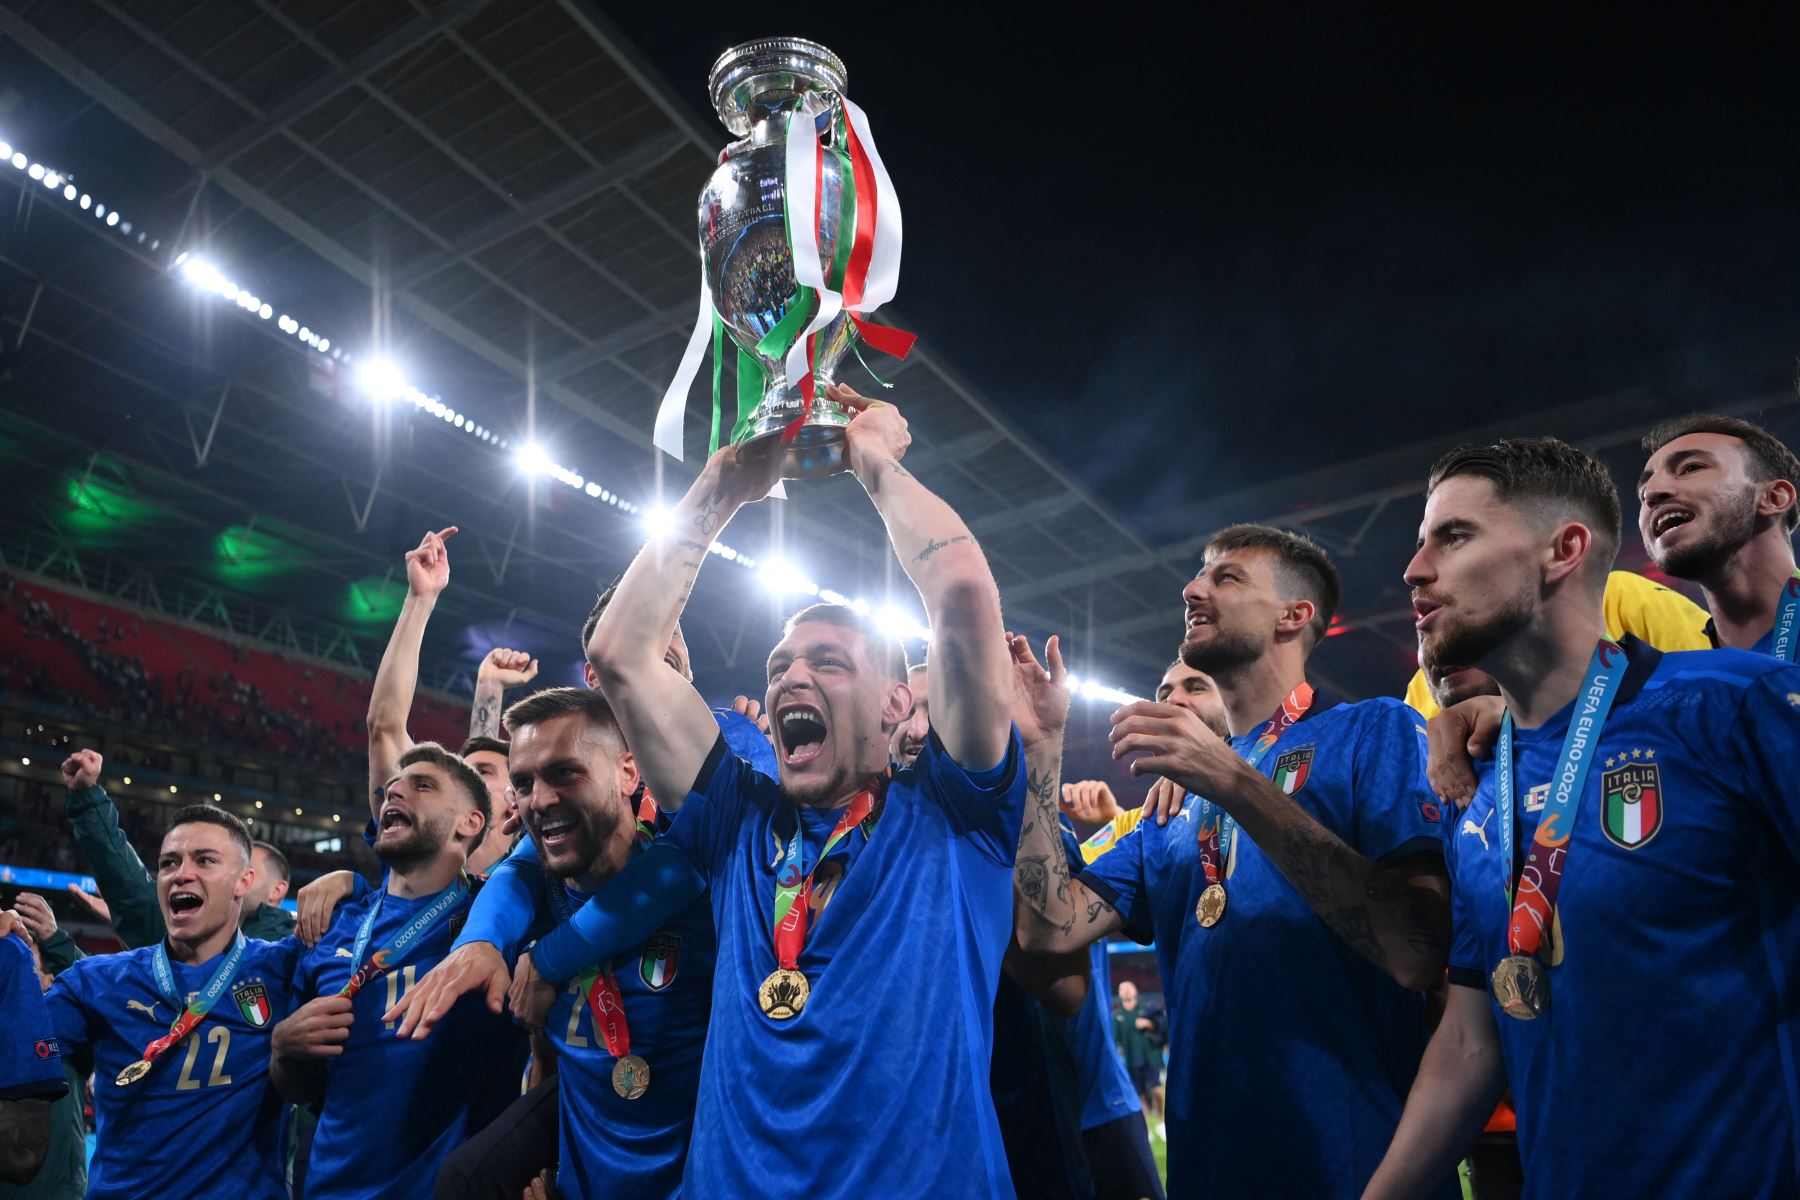 El delantero italiano Andrea Belotti posa con el trofeo del Campeonato de Europa después de que Italia ganara el partido de fútbol final de la UEFA EURO 2020 entre Italia e Inglaterra en el estadio de Wembley en Londres el 11 de julio de 2021. Foto: AFP